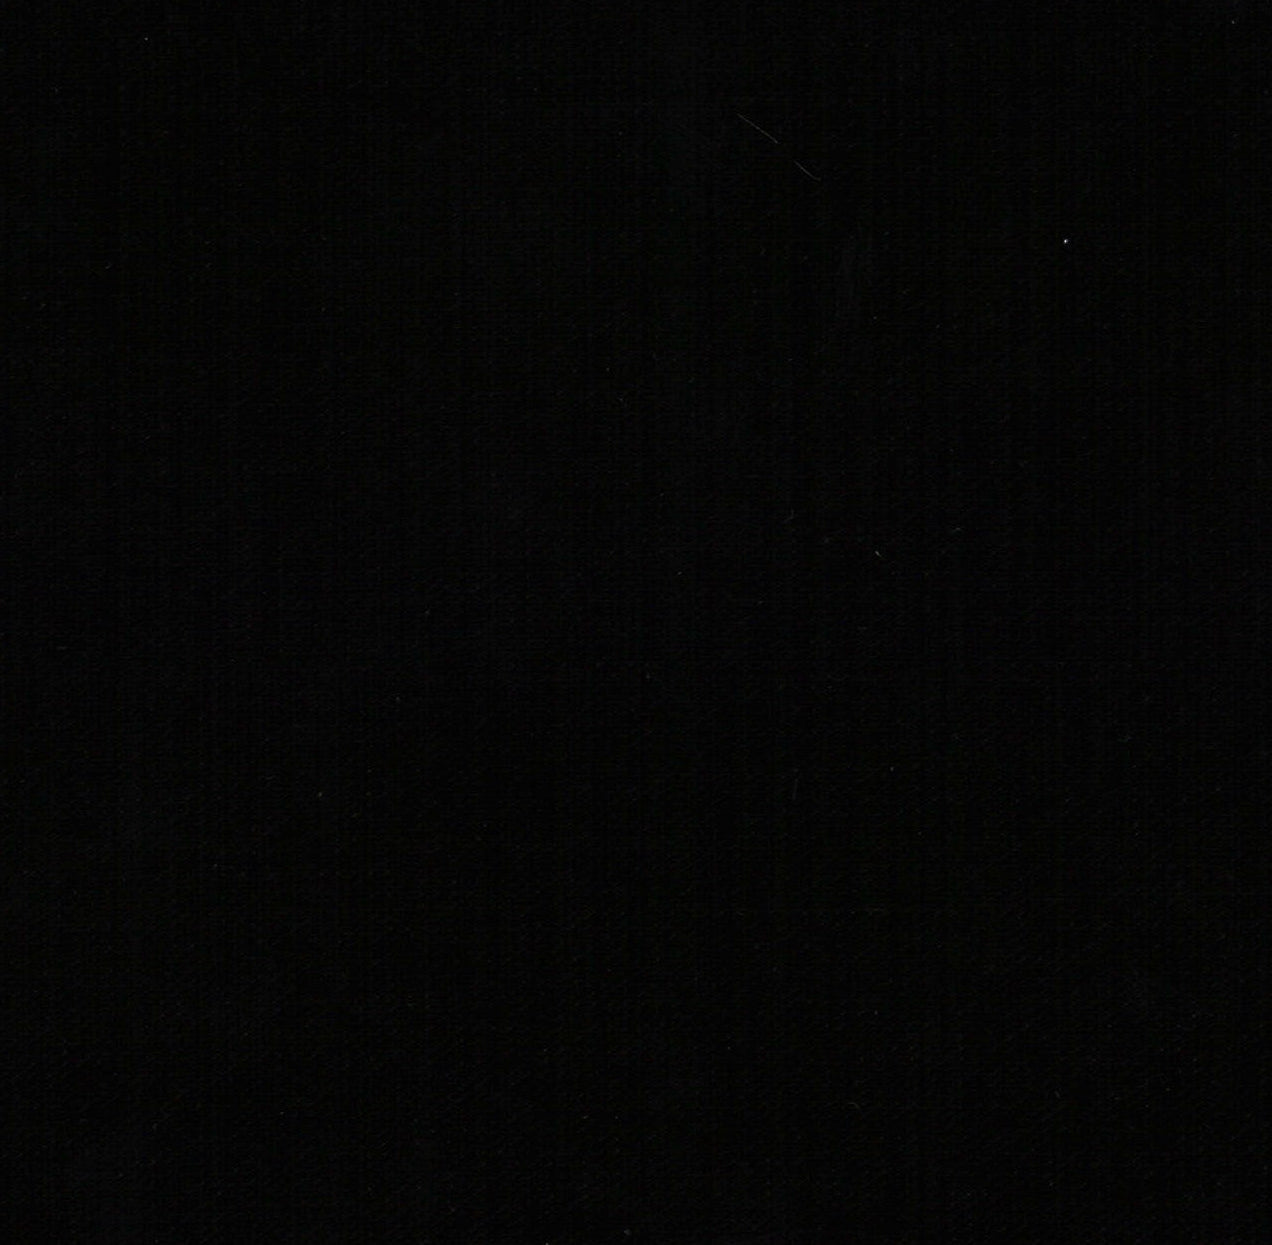 37001-03 Black Pearl Velvet Metallic Plain Dyed black metallic plain dyed polyester velvet woven Velvet, Metallic, Solid Color - knit fabric - woven fabric - fabric company - fabric wholesale - fabric b2b - fabric factory - high quality fabric - hong kong fabric - fabric hk - acetate fabric - cotton fabric - linen fabric - metallic fabric - nylon fabric - polyester fabric - spandex fabric - chun wing hing - cwh hk - fabric worldwide ship - 針織布 - 梳織布 - 布料公司- 布料批發 - 香港布料 - 秦榮興